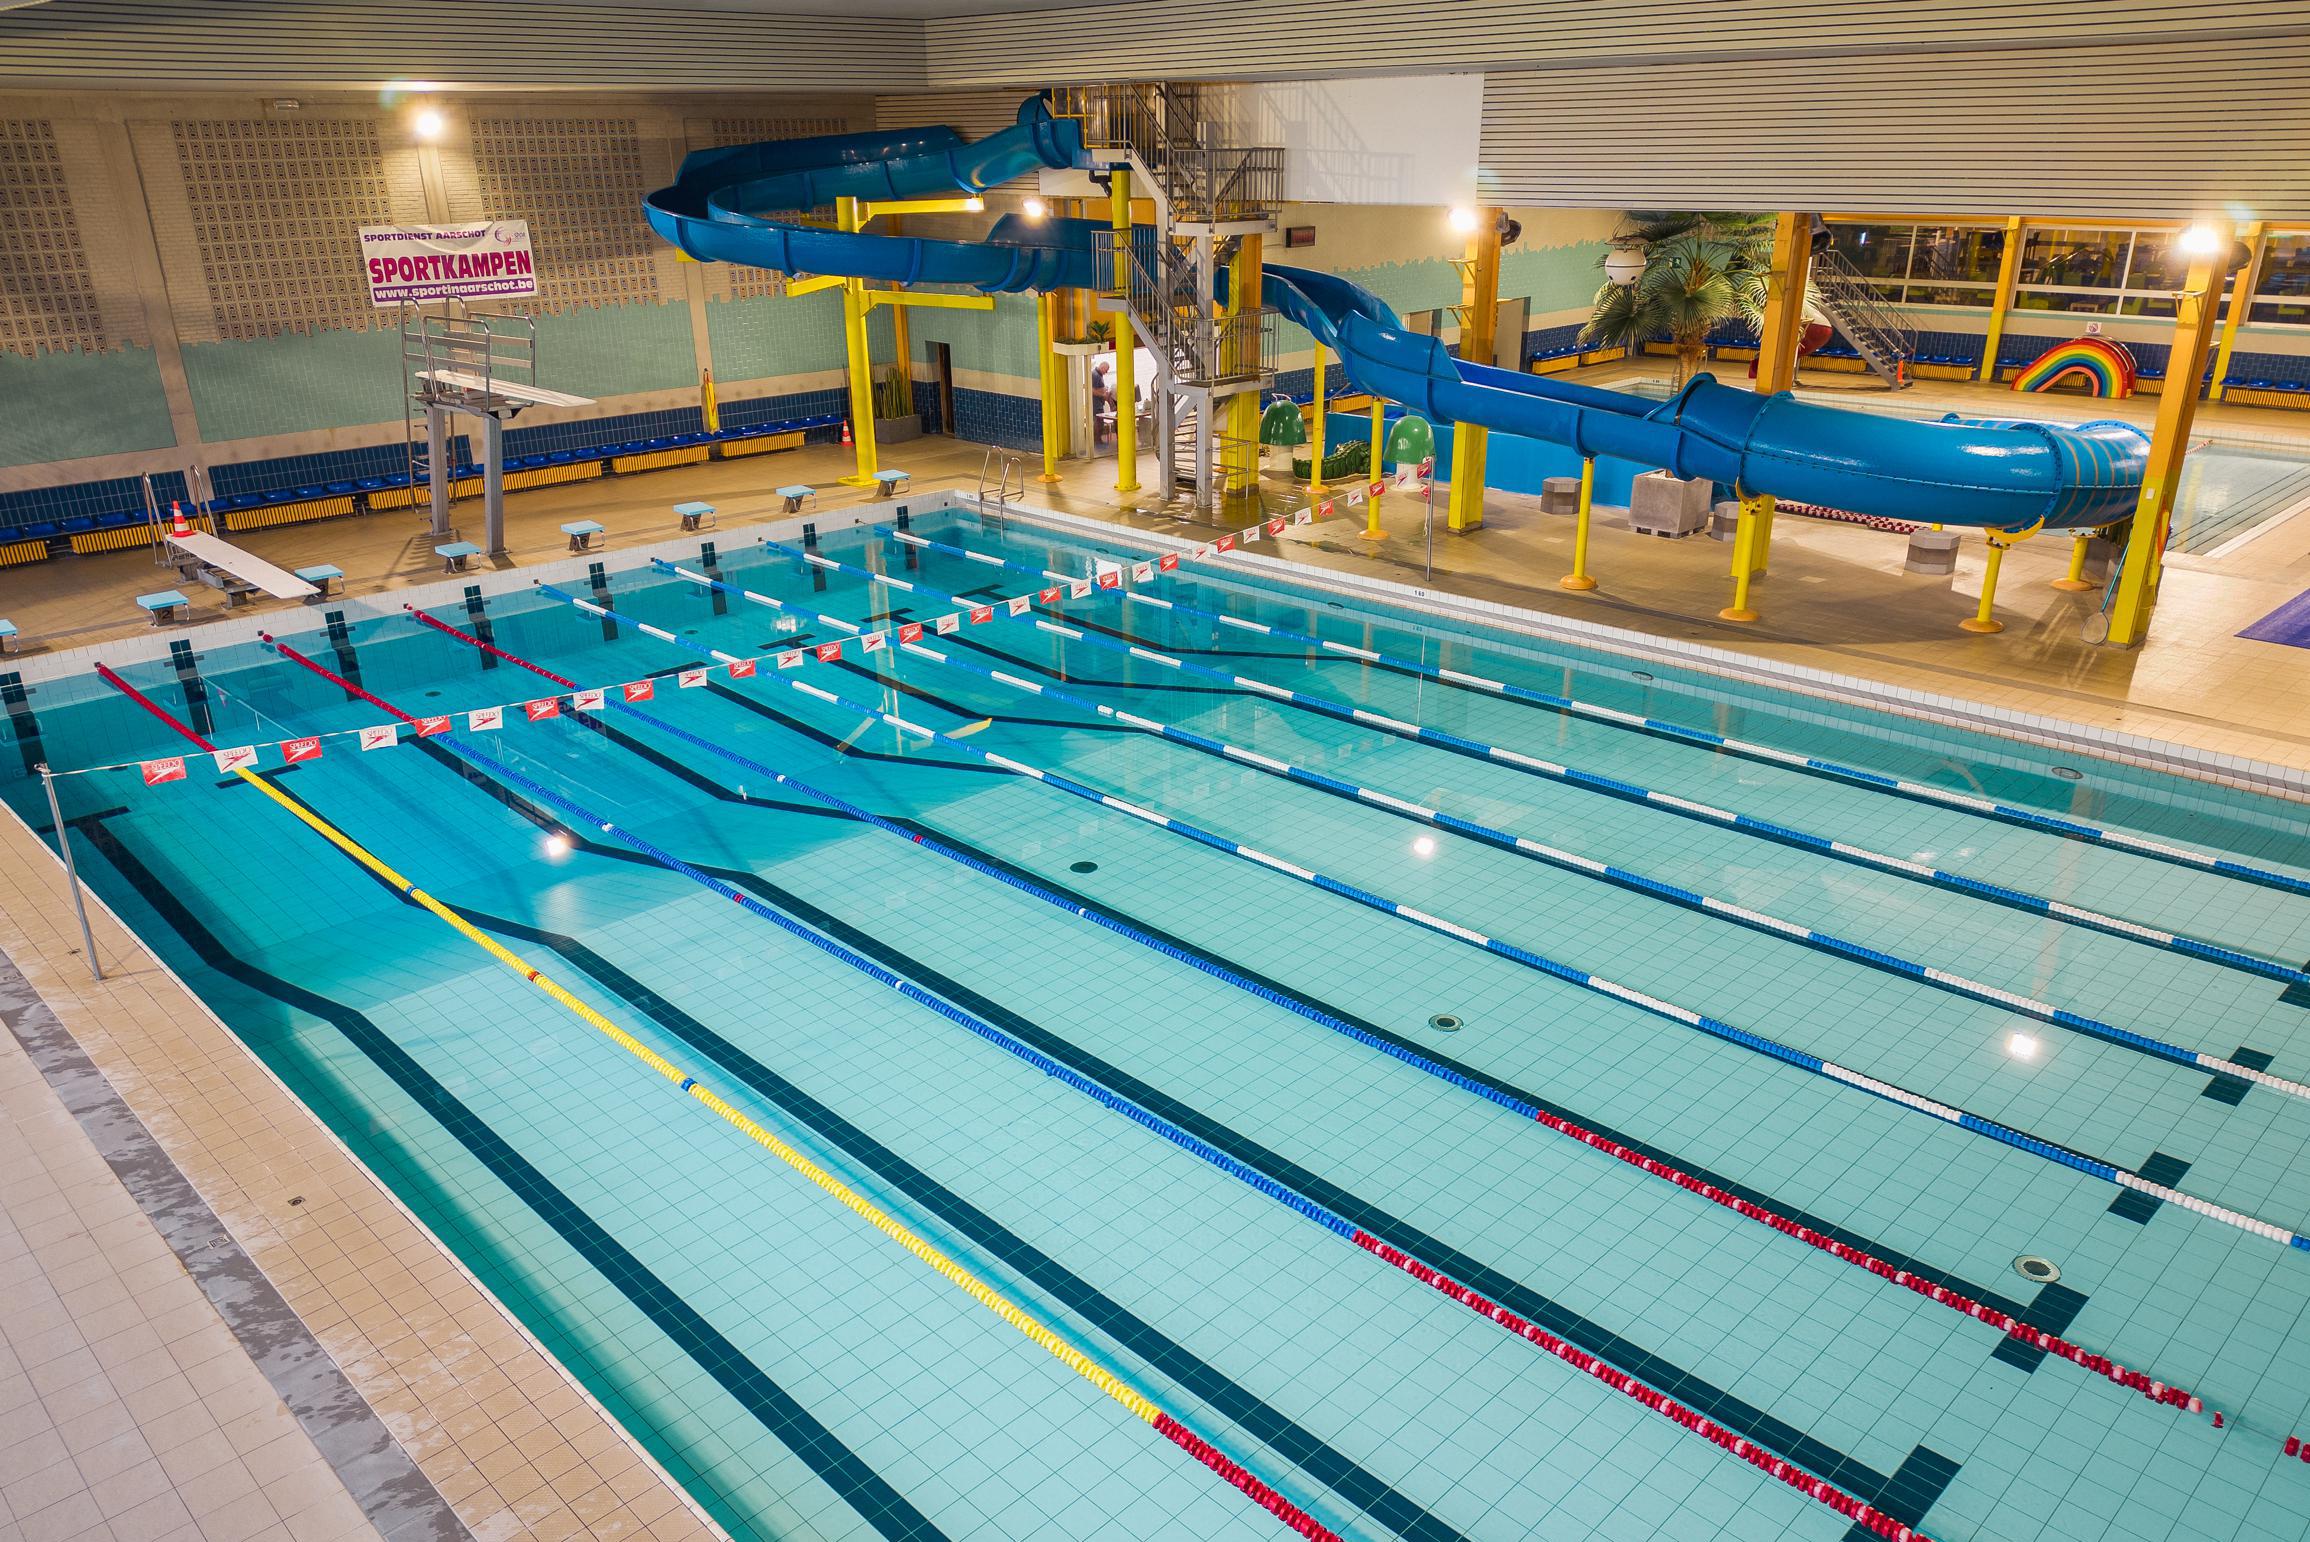 Jaarlijks vijf zwembaden water en bakken energie bespaard: stedelijk zwembad heropent na renovatie